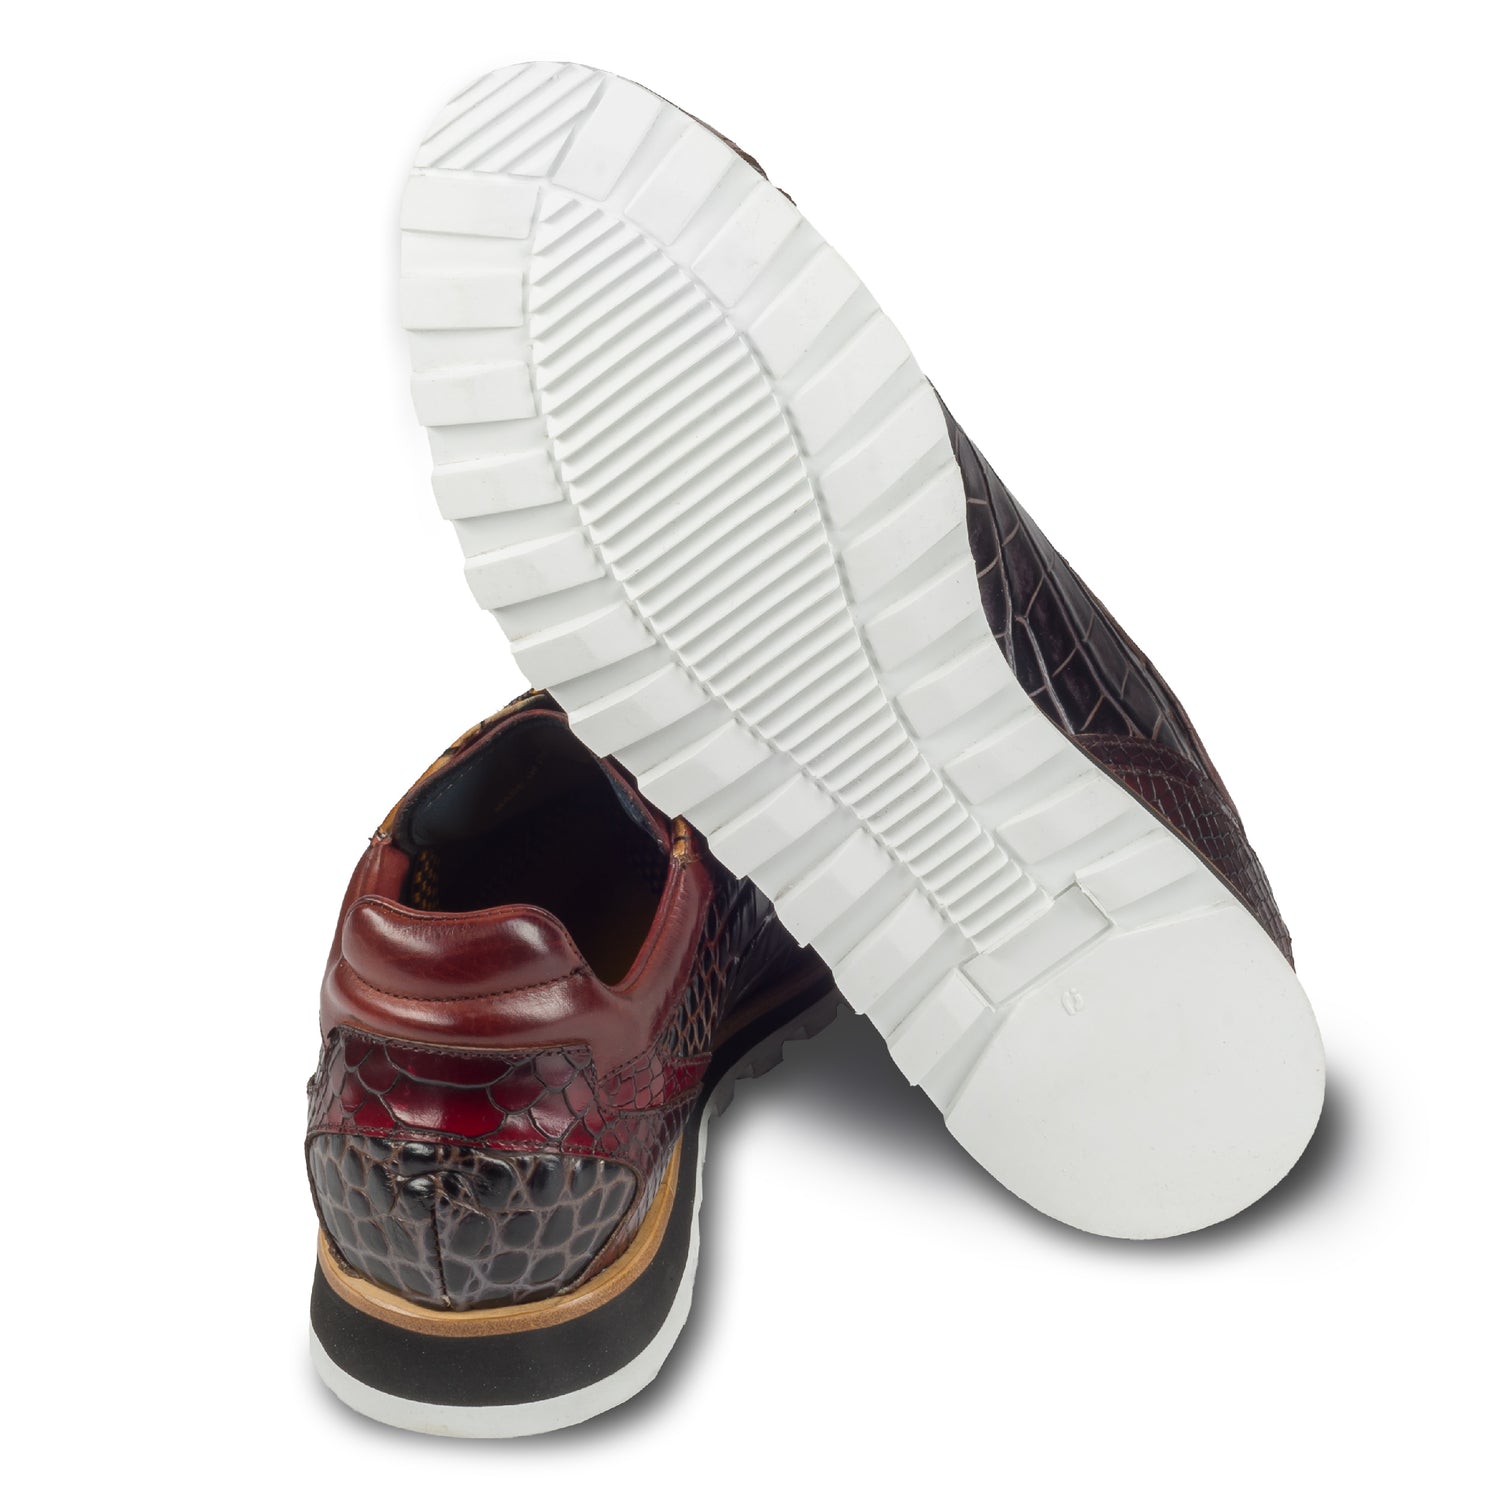 Lorenzi Herren Leder-Sneaker mit Reptil-Prägung in braun/rot. Handgefertigt. Ansicht der Ferse und Sohlenunterseite.